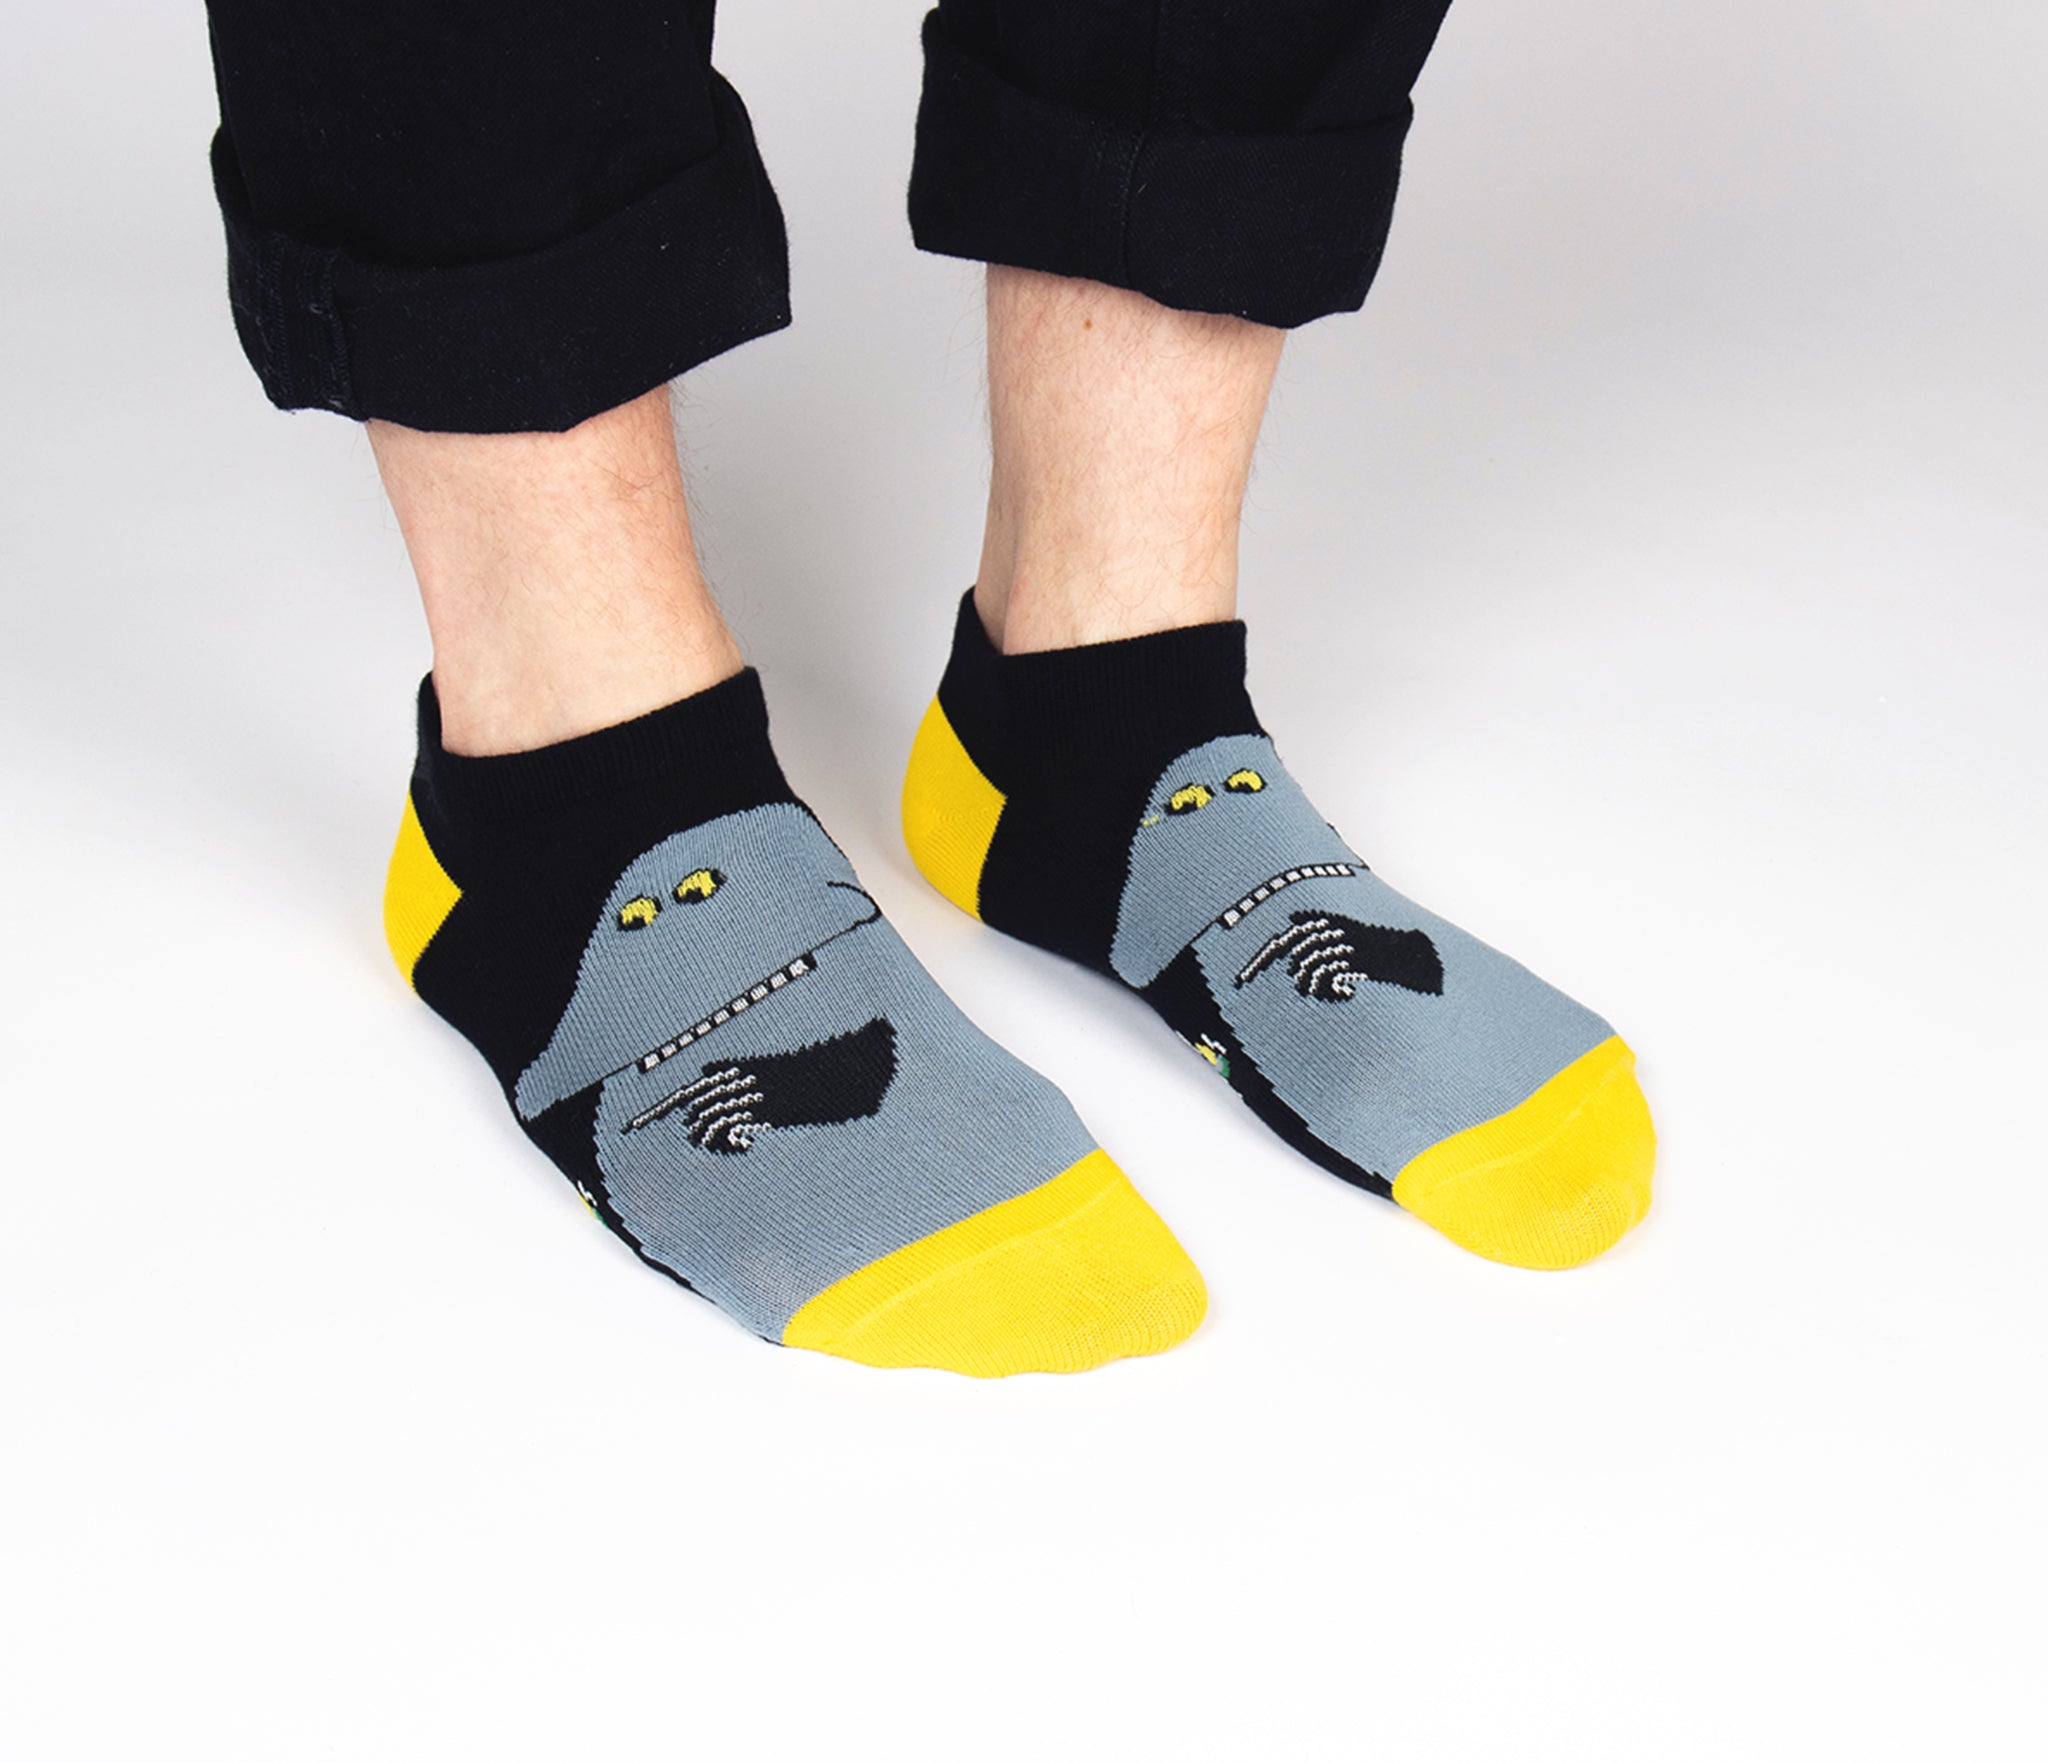 The Groke Men Ankle Socks - Black